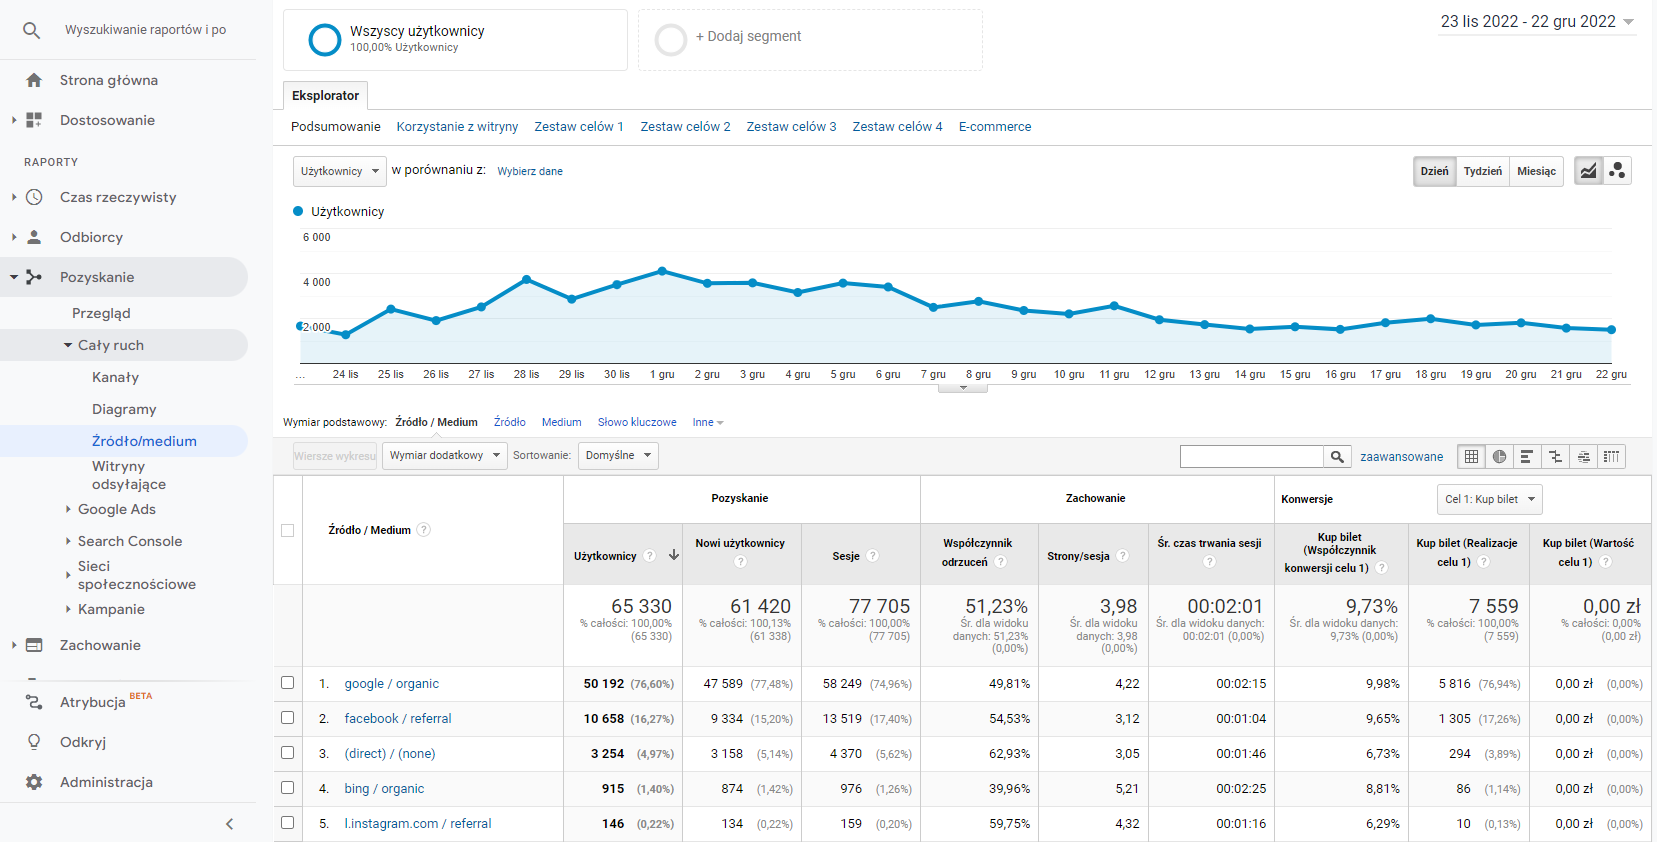 Google Analytics - raport pozyskiwanie źródło / medium